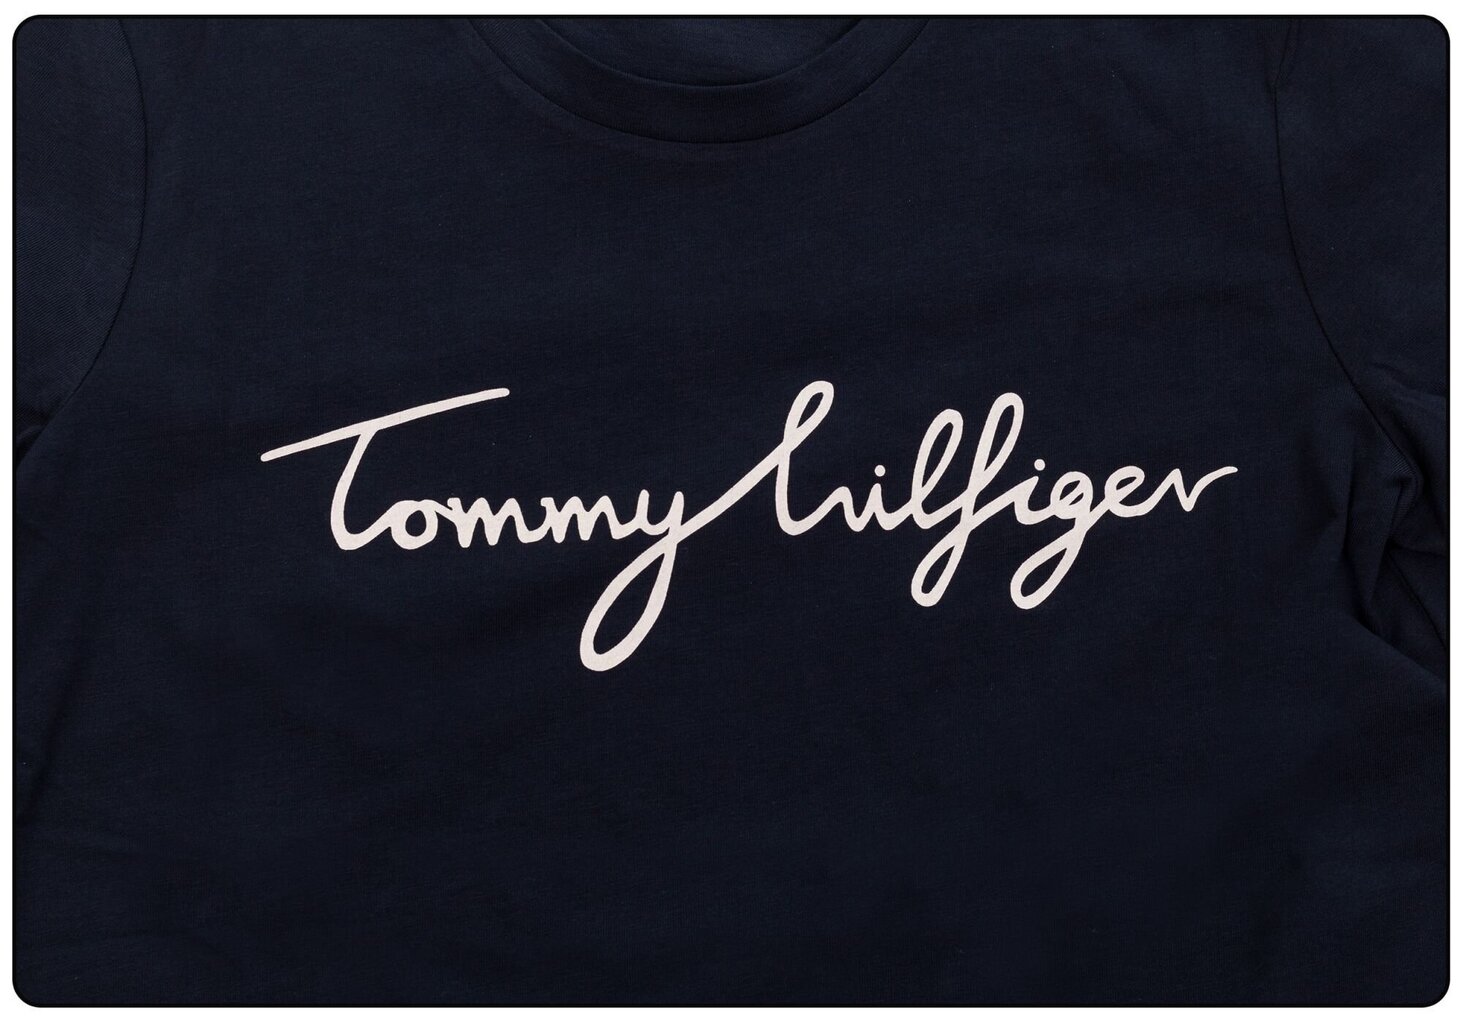 T-krekls sievietēm Tommy Hilfiger HERITAGE CREW NECK GRAPHIC TEE NAVY WW0WW24967 403 25452 cena un informācija | T-krekli sievietēm | 220.lv